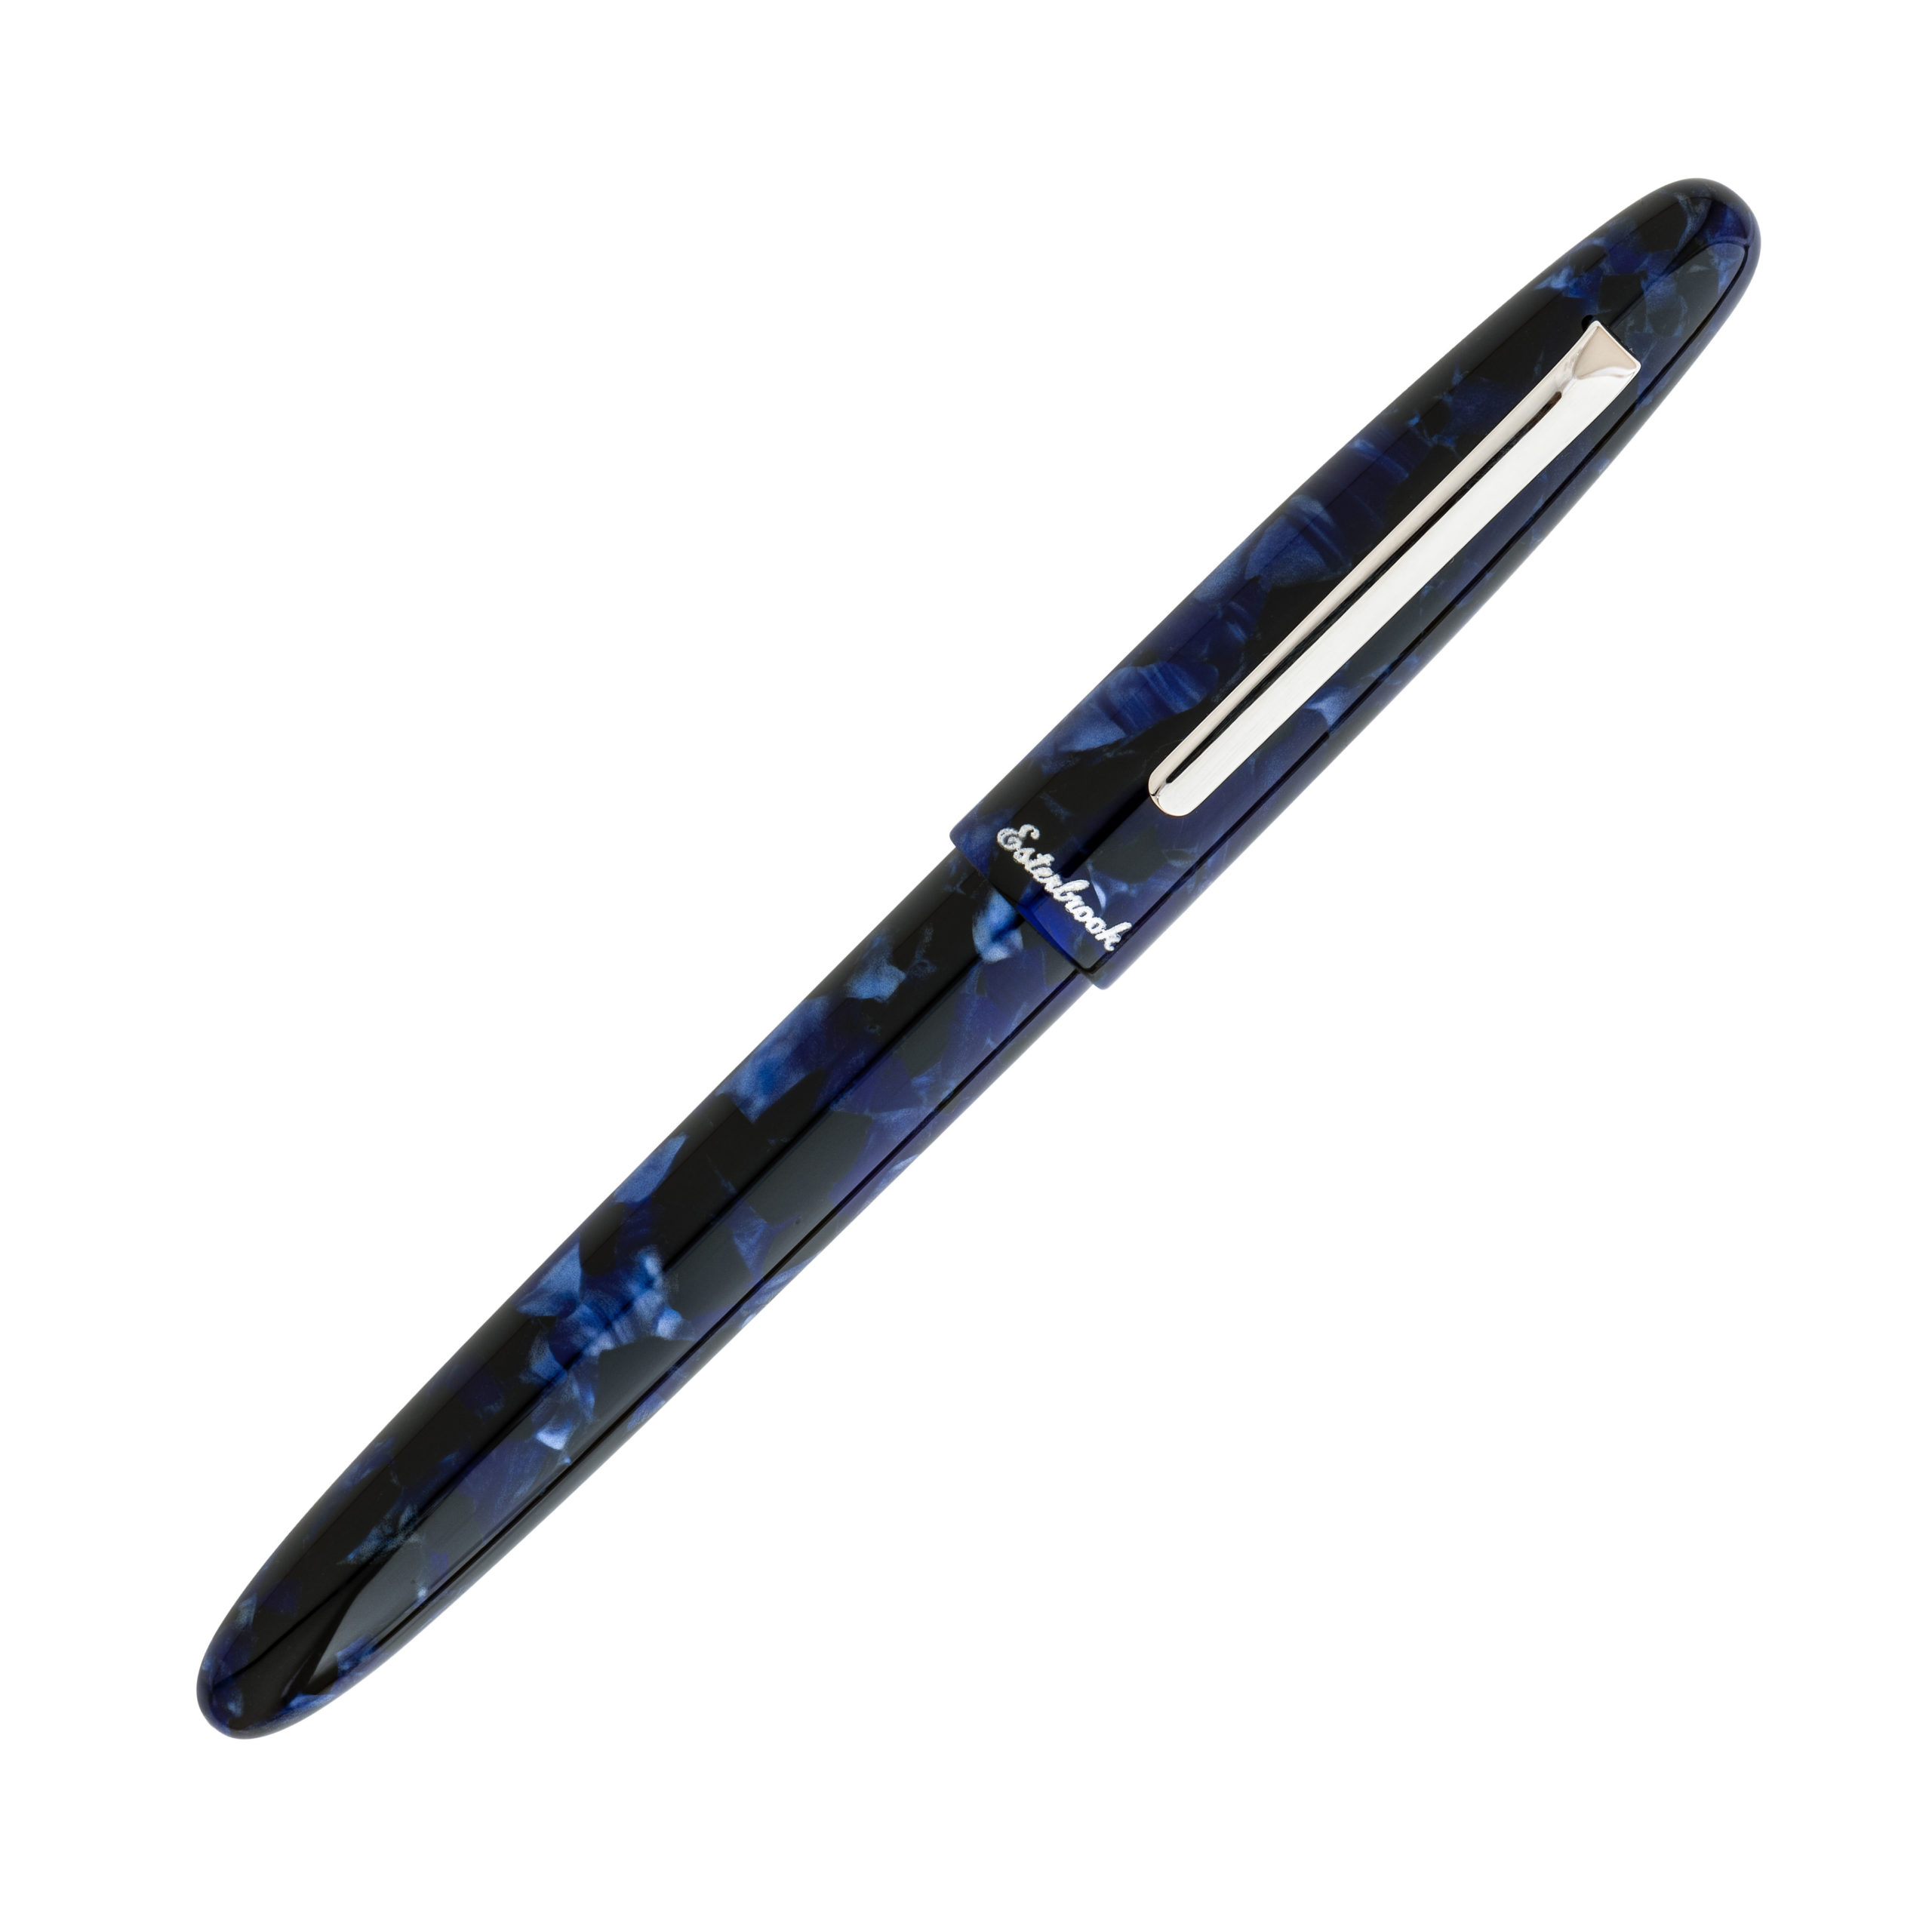 Esterbrook Estie Cobalt Blue Silver Trim Fountain Pen